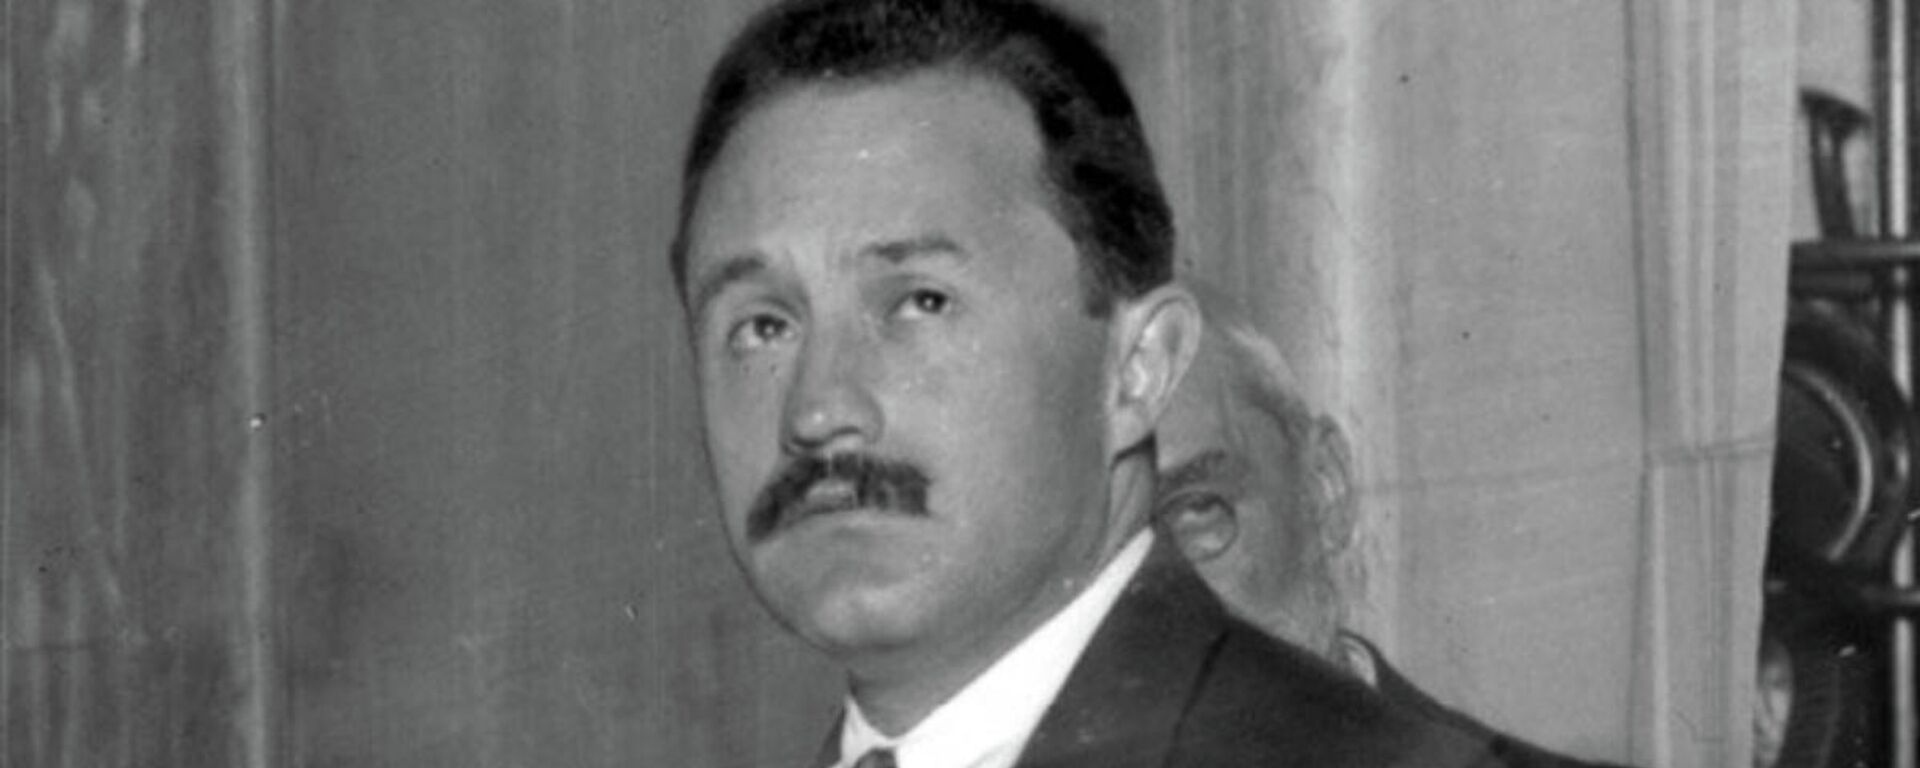 José Vasconcelos, exsecretario de Educación Pública de México, quien defendió las ideas de Adolfo Hitler  - Sputnik Mundo, 1920, 15.12.2021